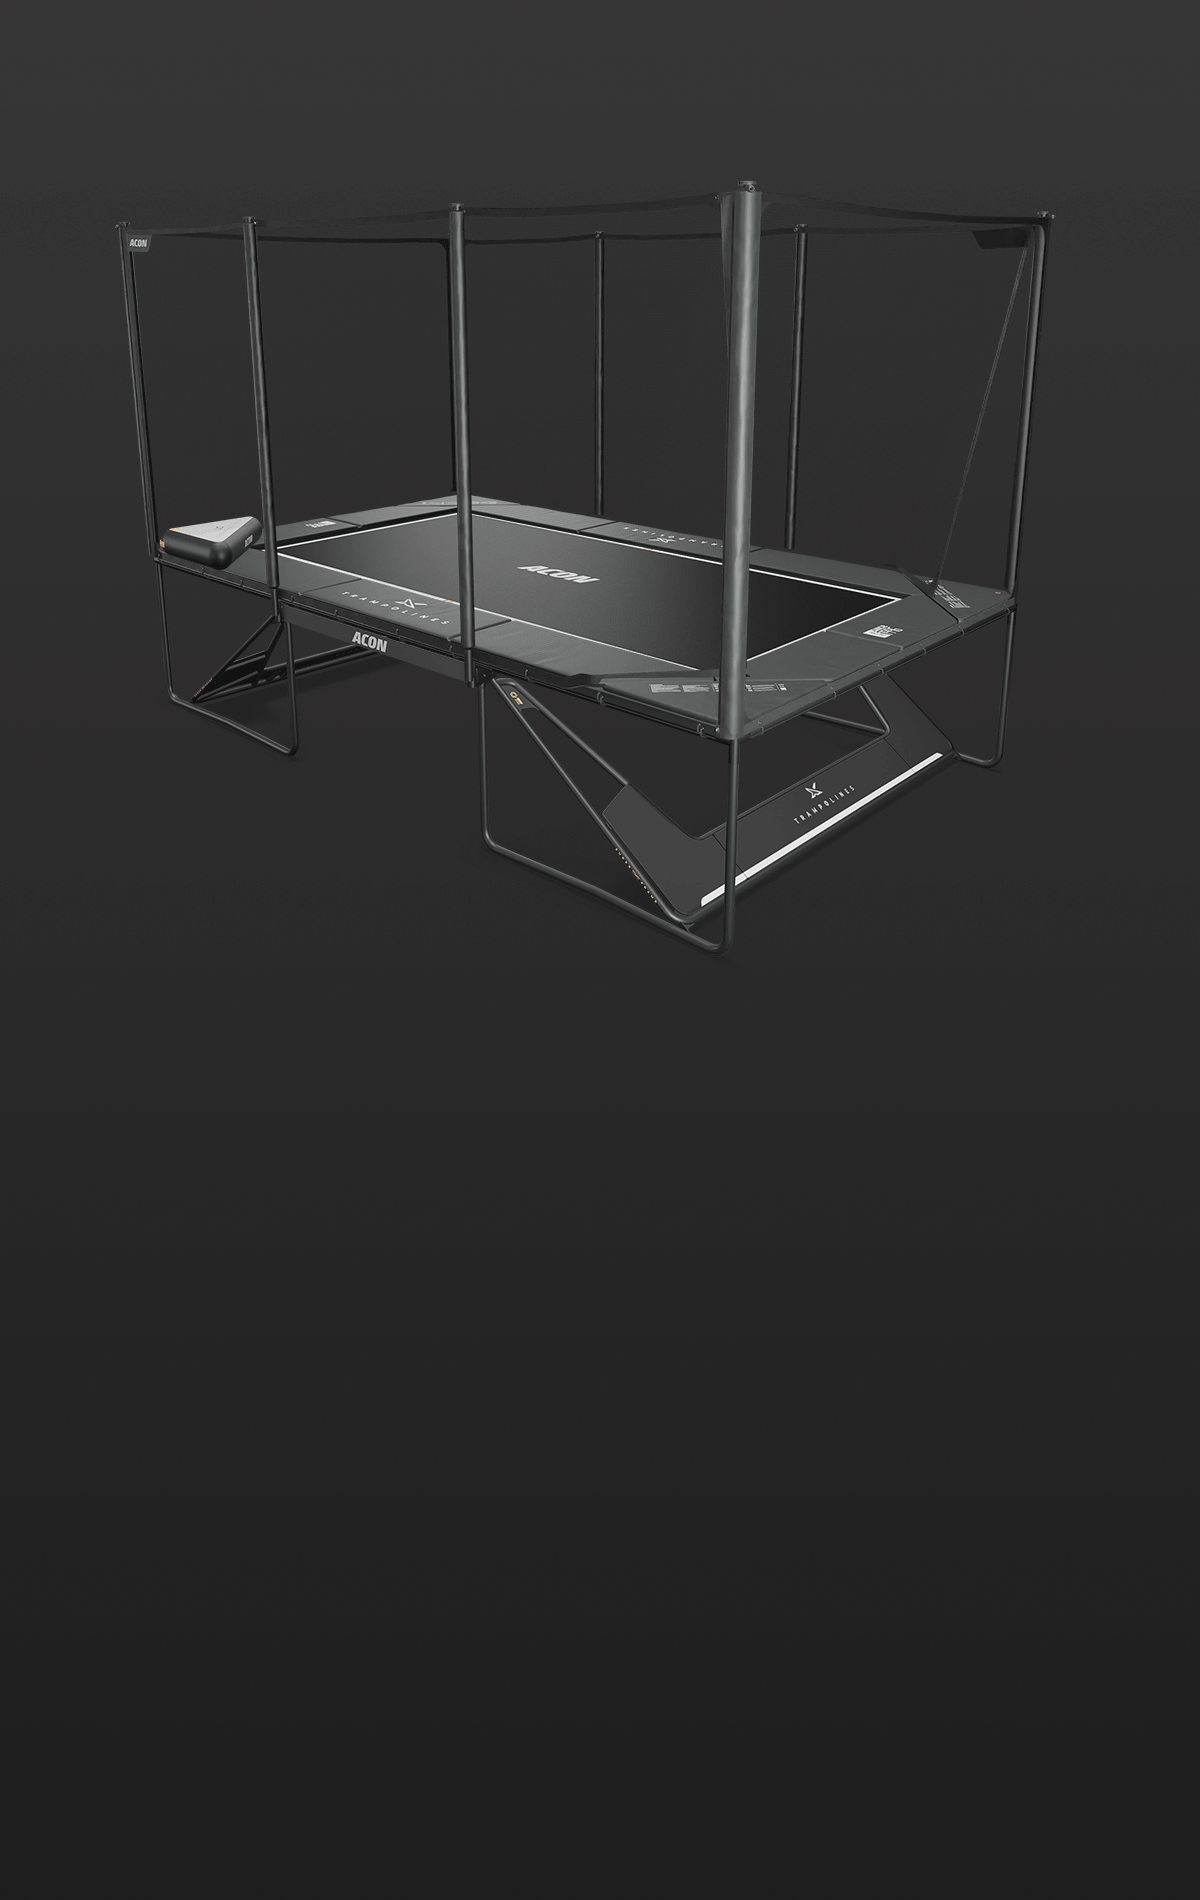 Animoitu kuva Acon X trampoliinista ja sen lisävarusteista.